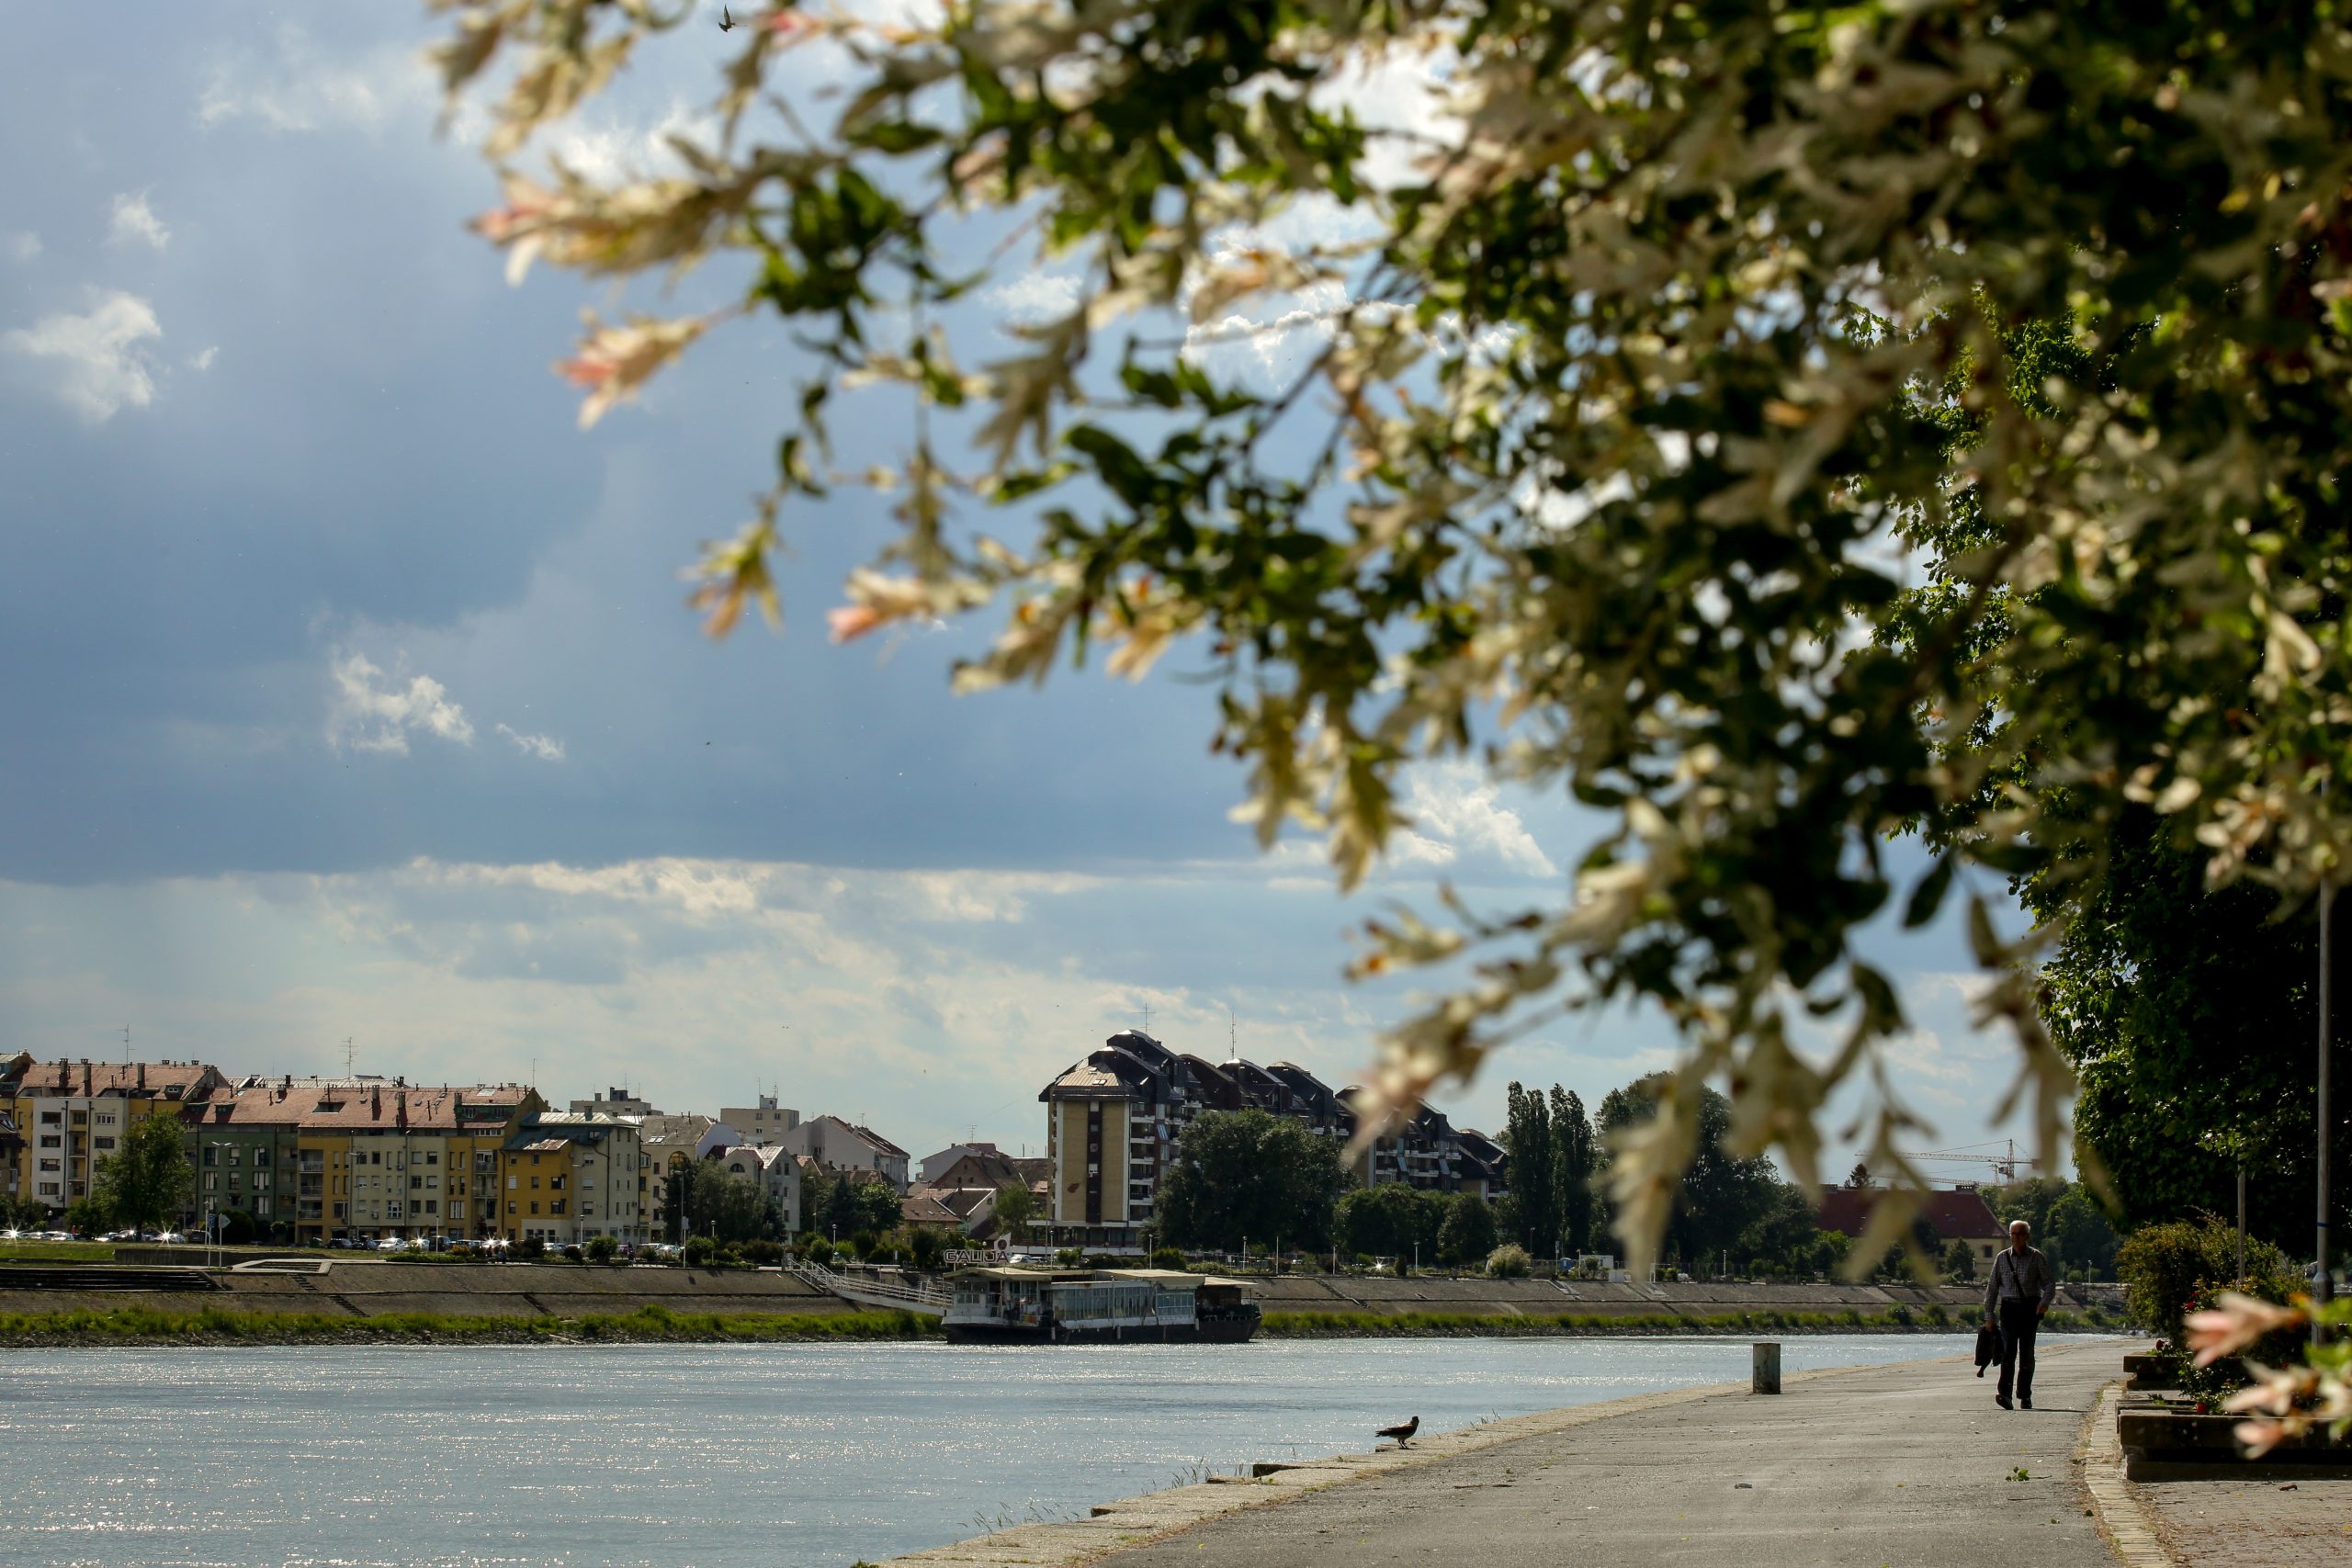 02.06.2020., Osijek - Osjecani se sale da u jednom danu prodju sva cetiri godisnja doba, oblaci i sunce stalno se izmjenjuju, kisa pada desetak puta na dan.
Photo: Dubravka Petric/PIXSELL